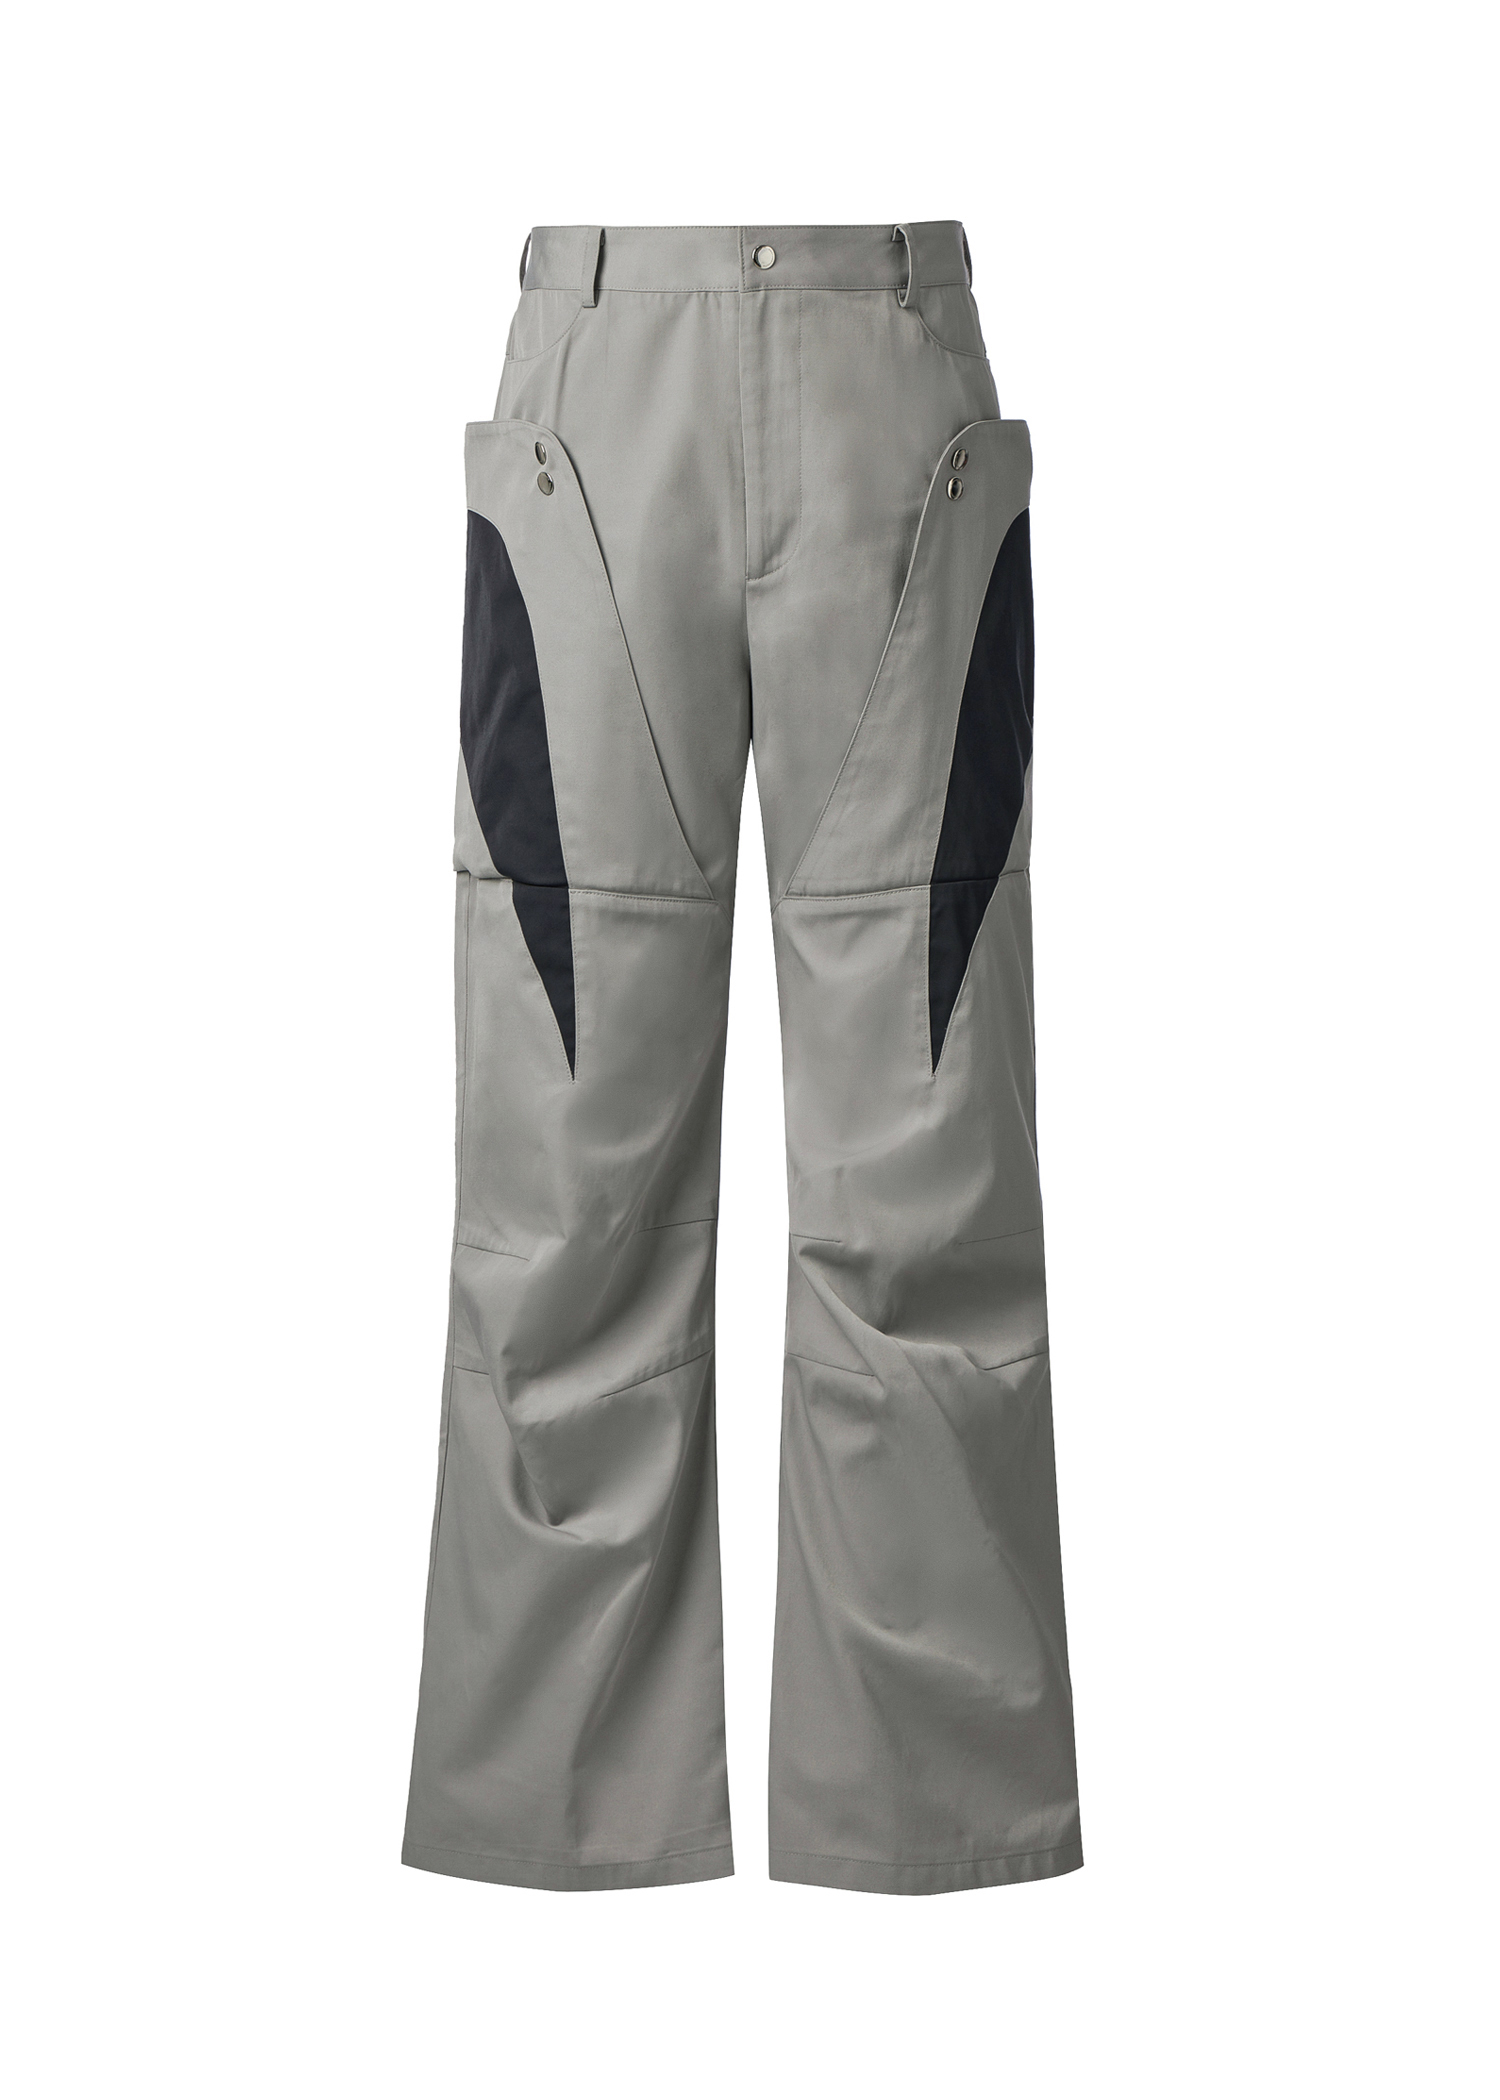 003-23 flap pocket pants - sand grey